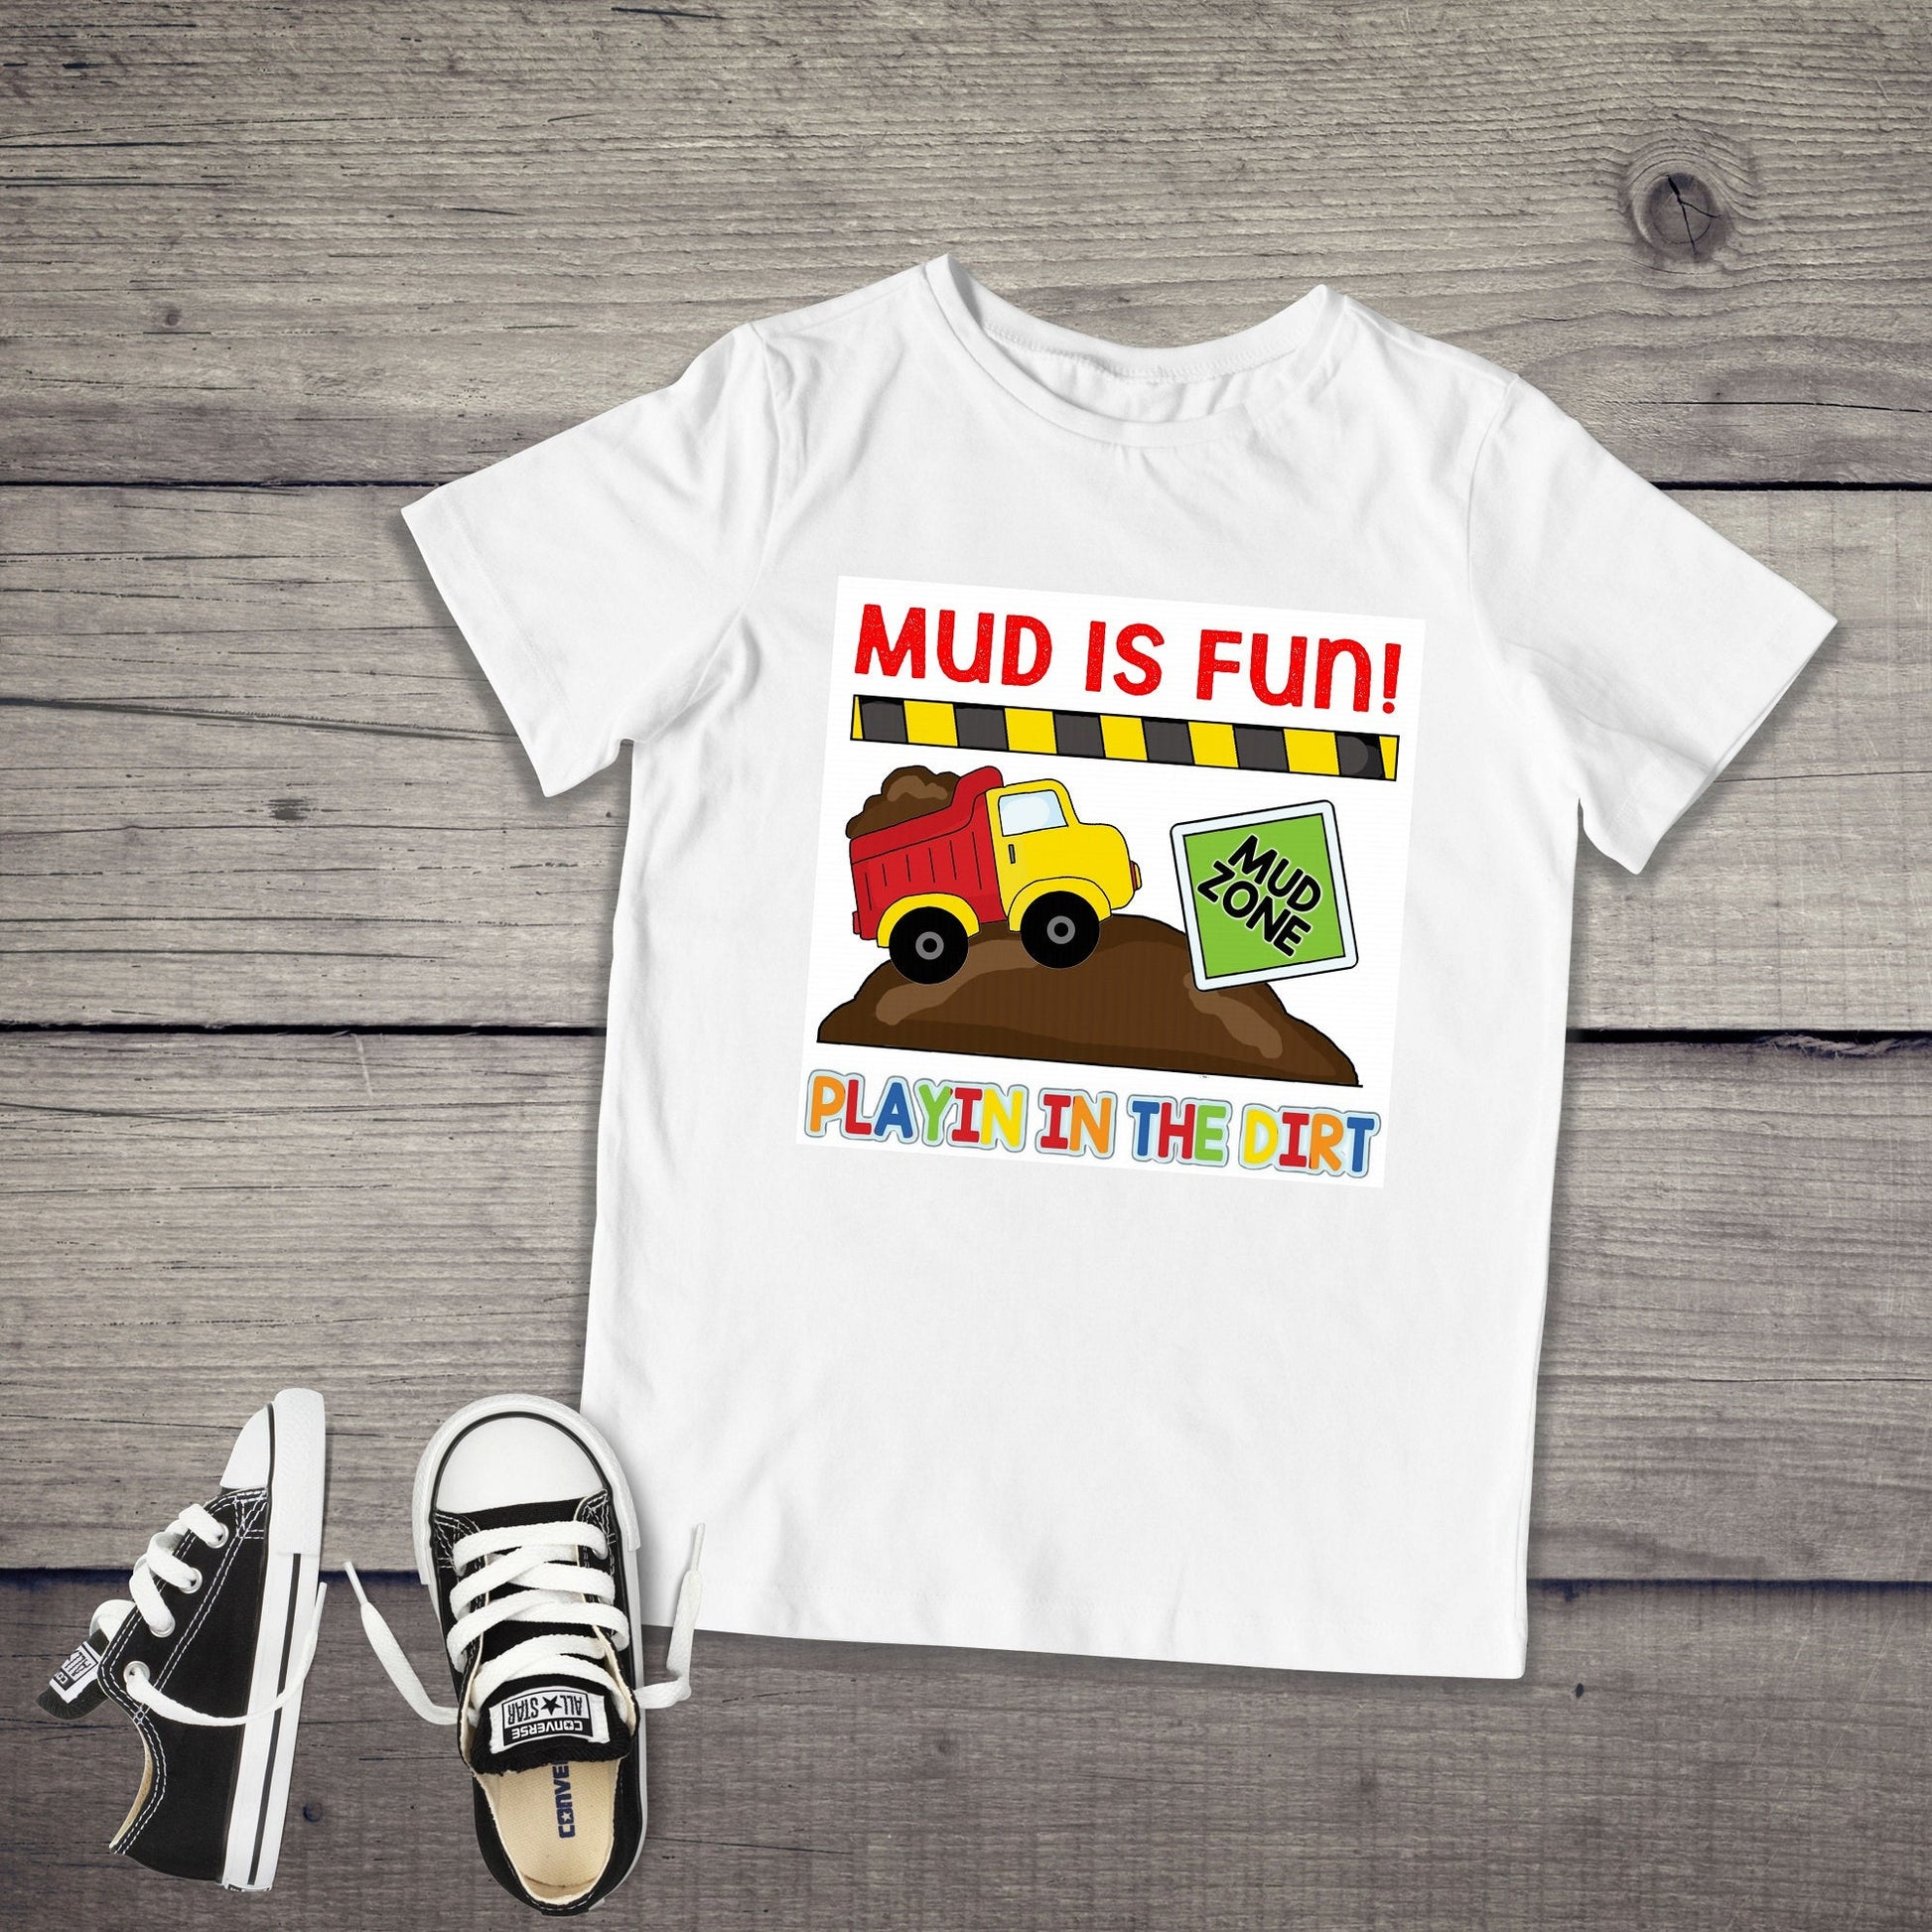 Mud Is Fun Infant or Toddler Shirt or Bodysuit - mud - cute toddler boy shirt 